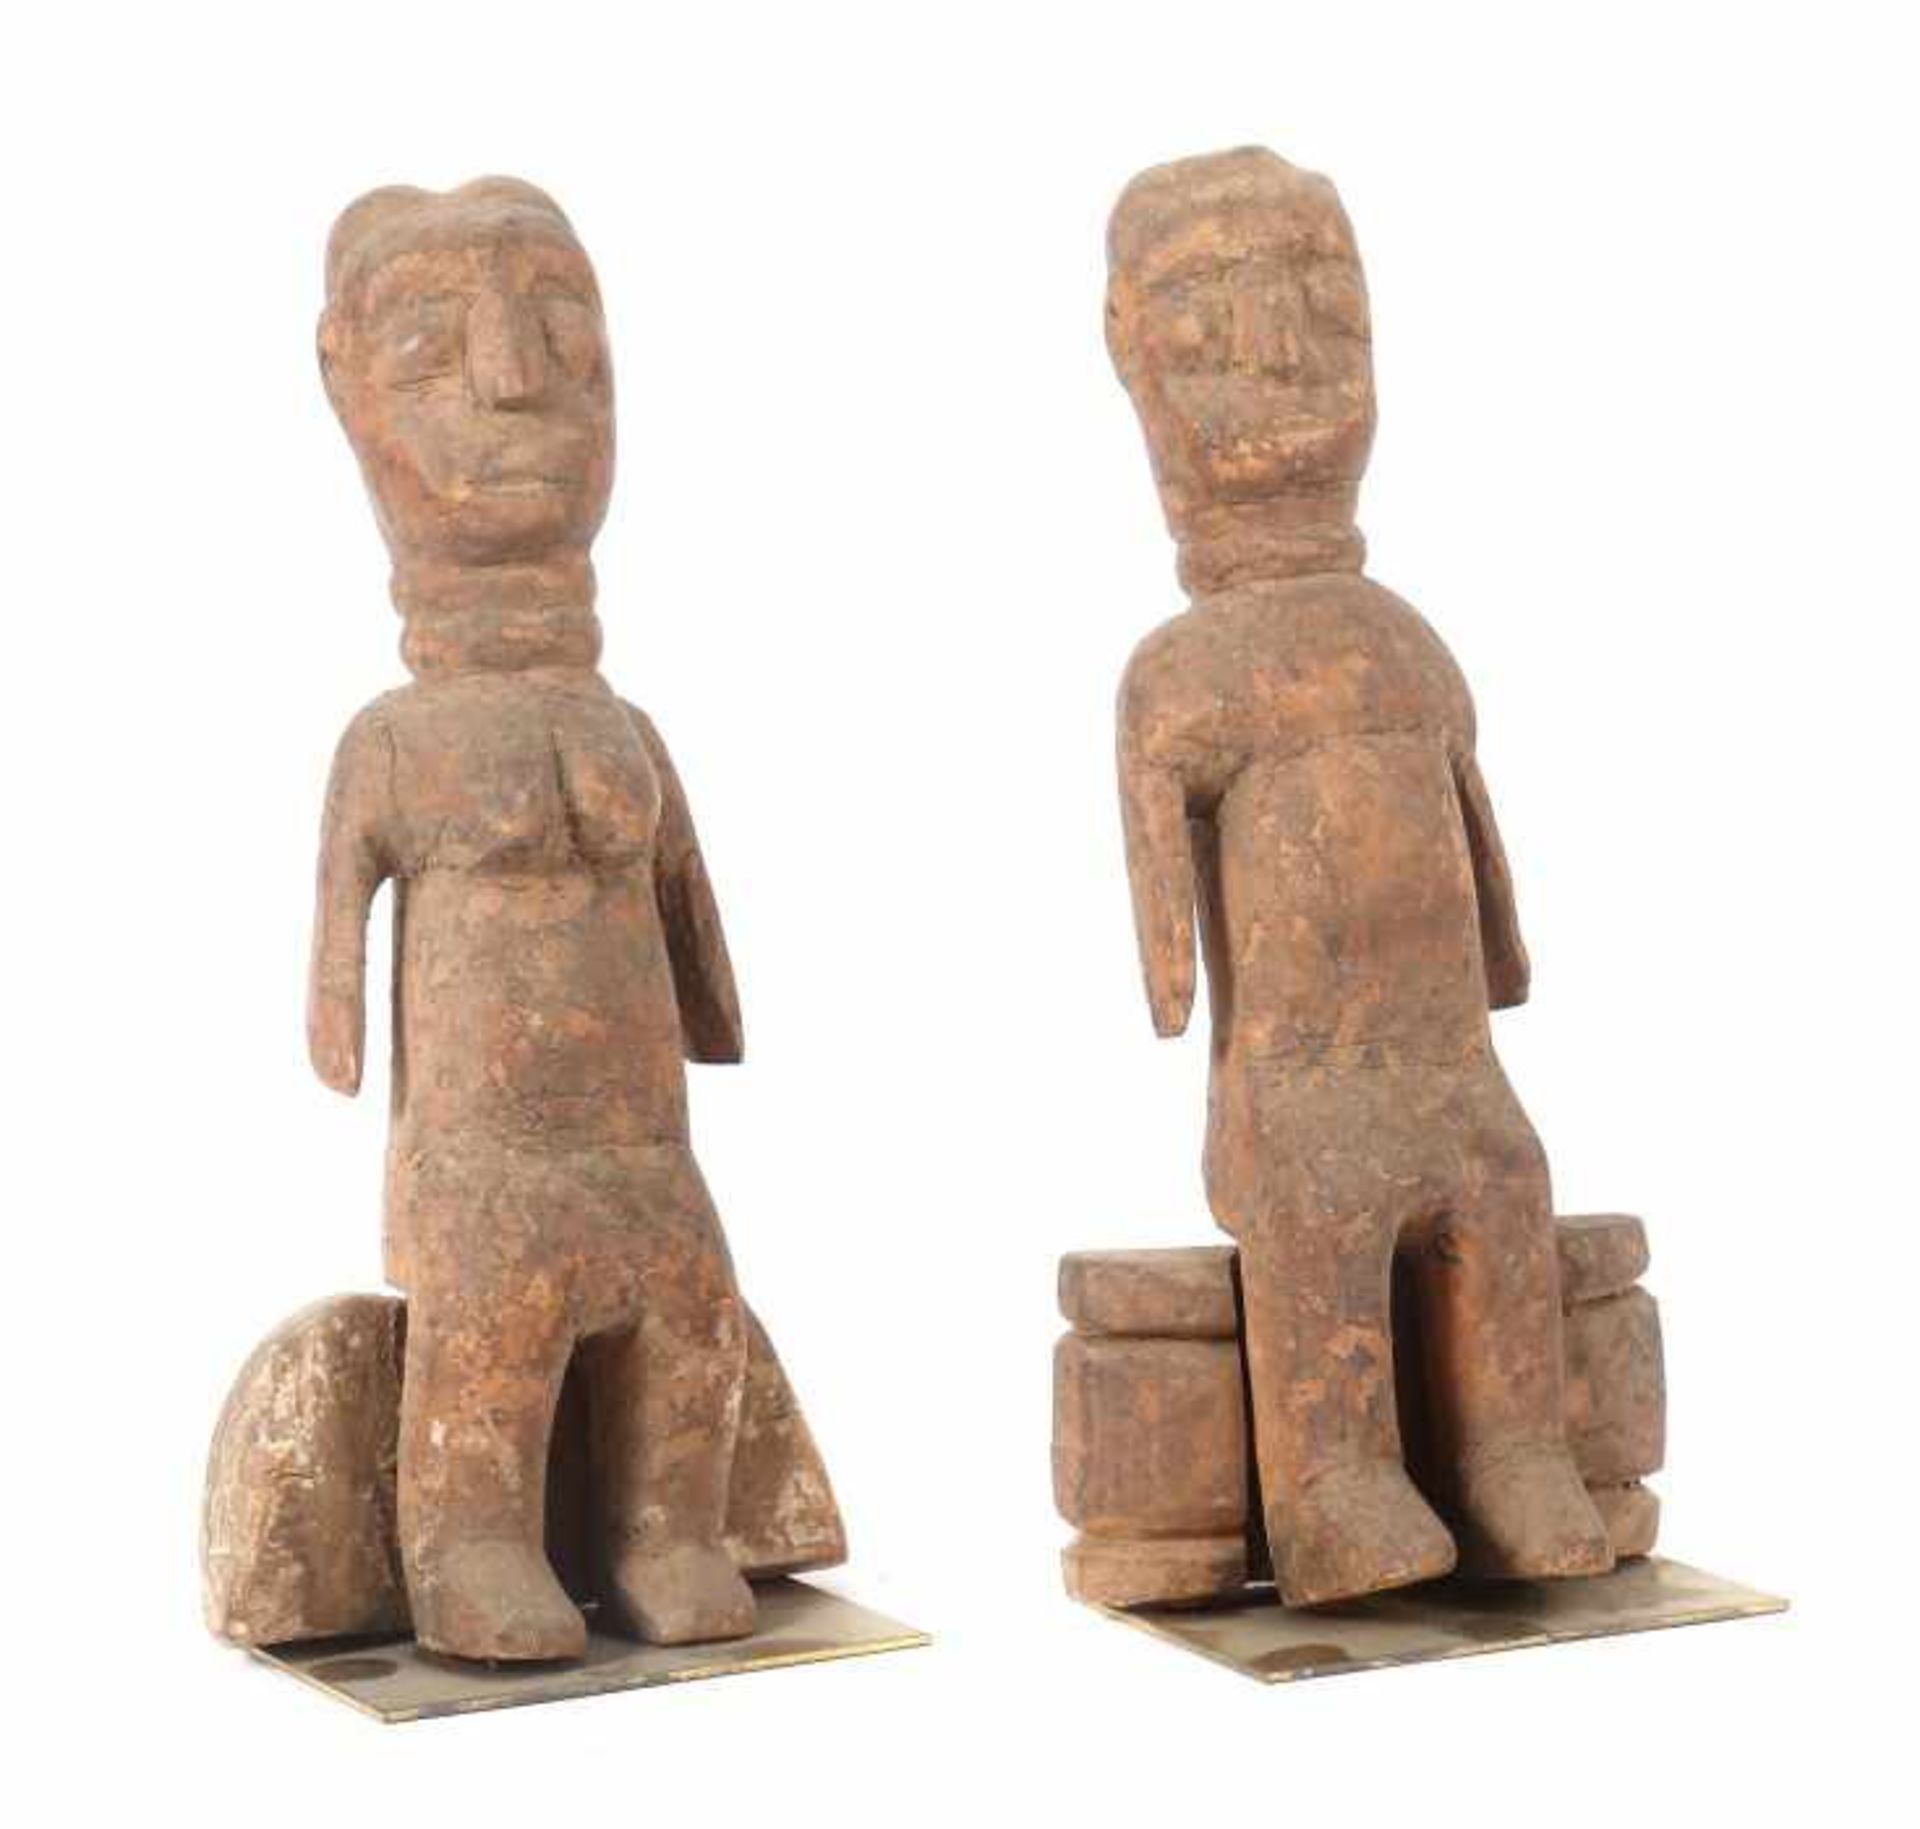 Sitzendes AhnenpaarGhana/Togo, ein Stamm der Akan, auf Hocker einzeln sitzende männliche und